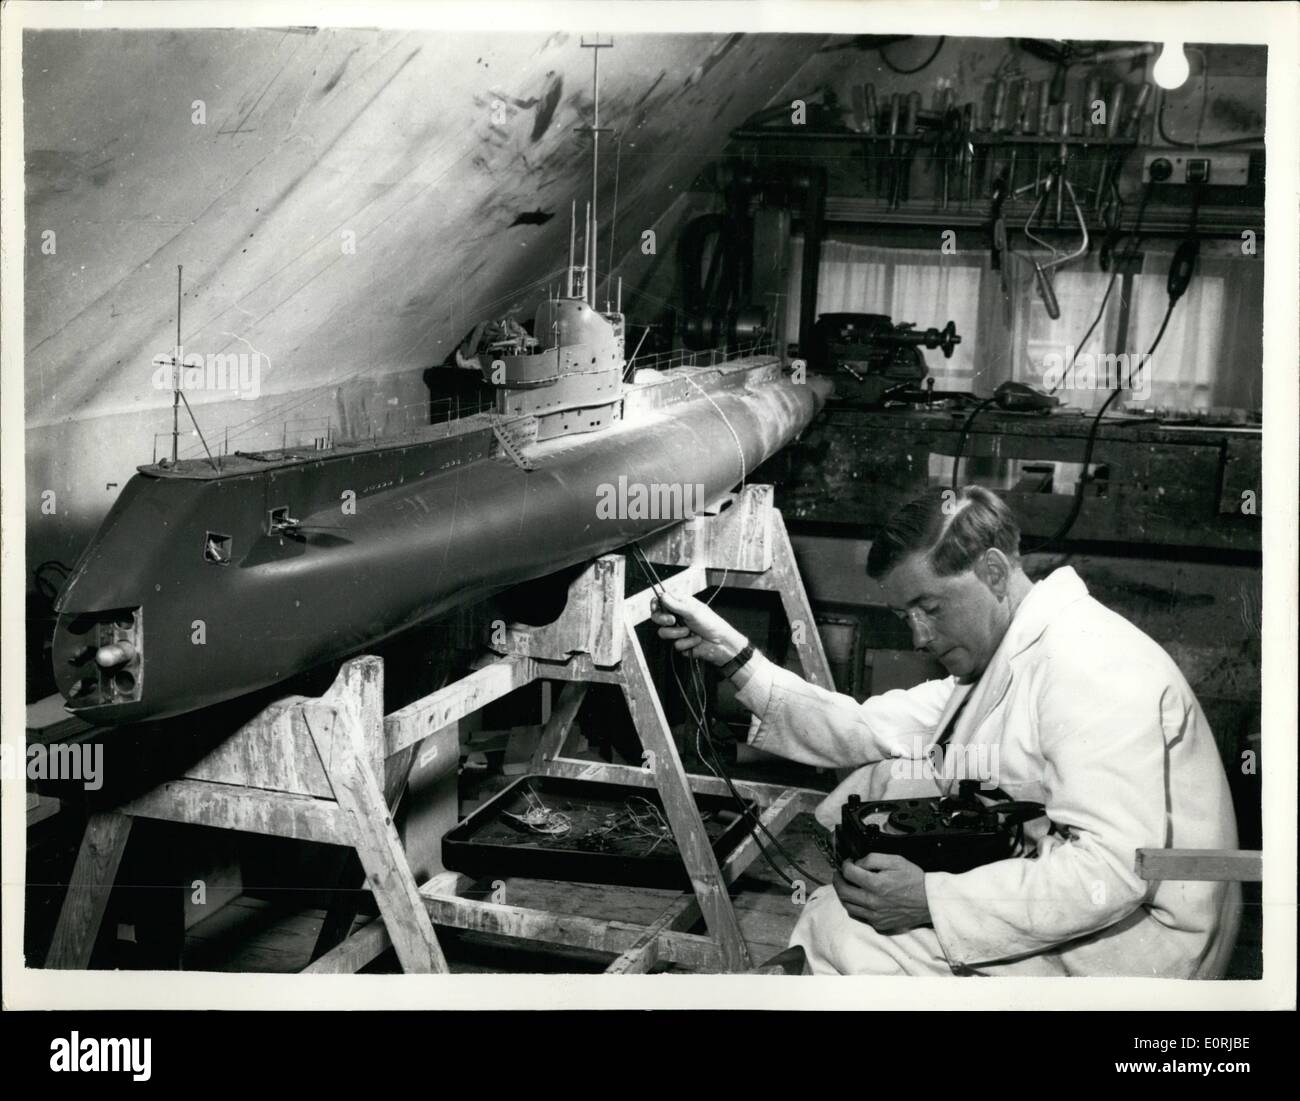 11. November 1959 - Fuß zehn arbeiten Modell eines u-Boot, gebaut in einem Schlafzimmer... Es wird tatsächlich echte Raketen Feuer. Ein zehn Fuß langes Modell eines u-Bootes wurde gebaut, in der Mansarde eine 38-jährige Ministerium für Versorgungsmaterial Arbeiter - Herr David Ashton von Sevenoaks, Kent, zu einem Preis von, 000... Den Namen '' Olympus'' es feuern Raketen und Torpedos während untergetaucht wird ferngesteuert - fähig sein wird. Das Modell wurde vor drei Jahren begonnen - wiegt 200 lbs und ist in der Lage, Tauchen 15 Fuß... Stockfoto